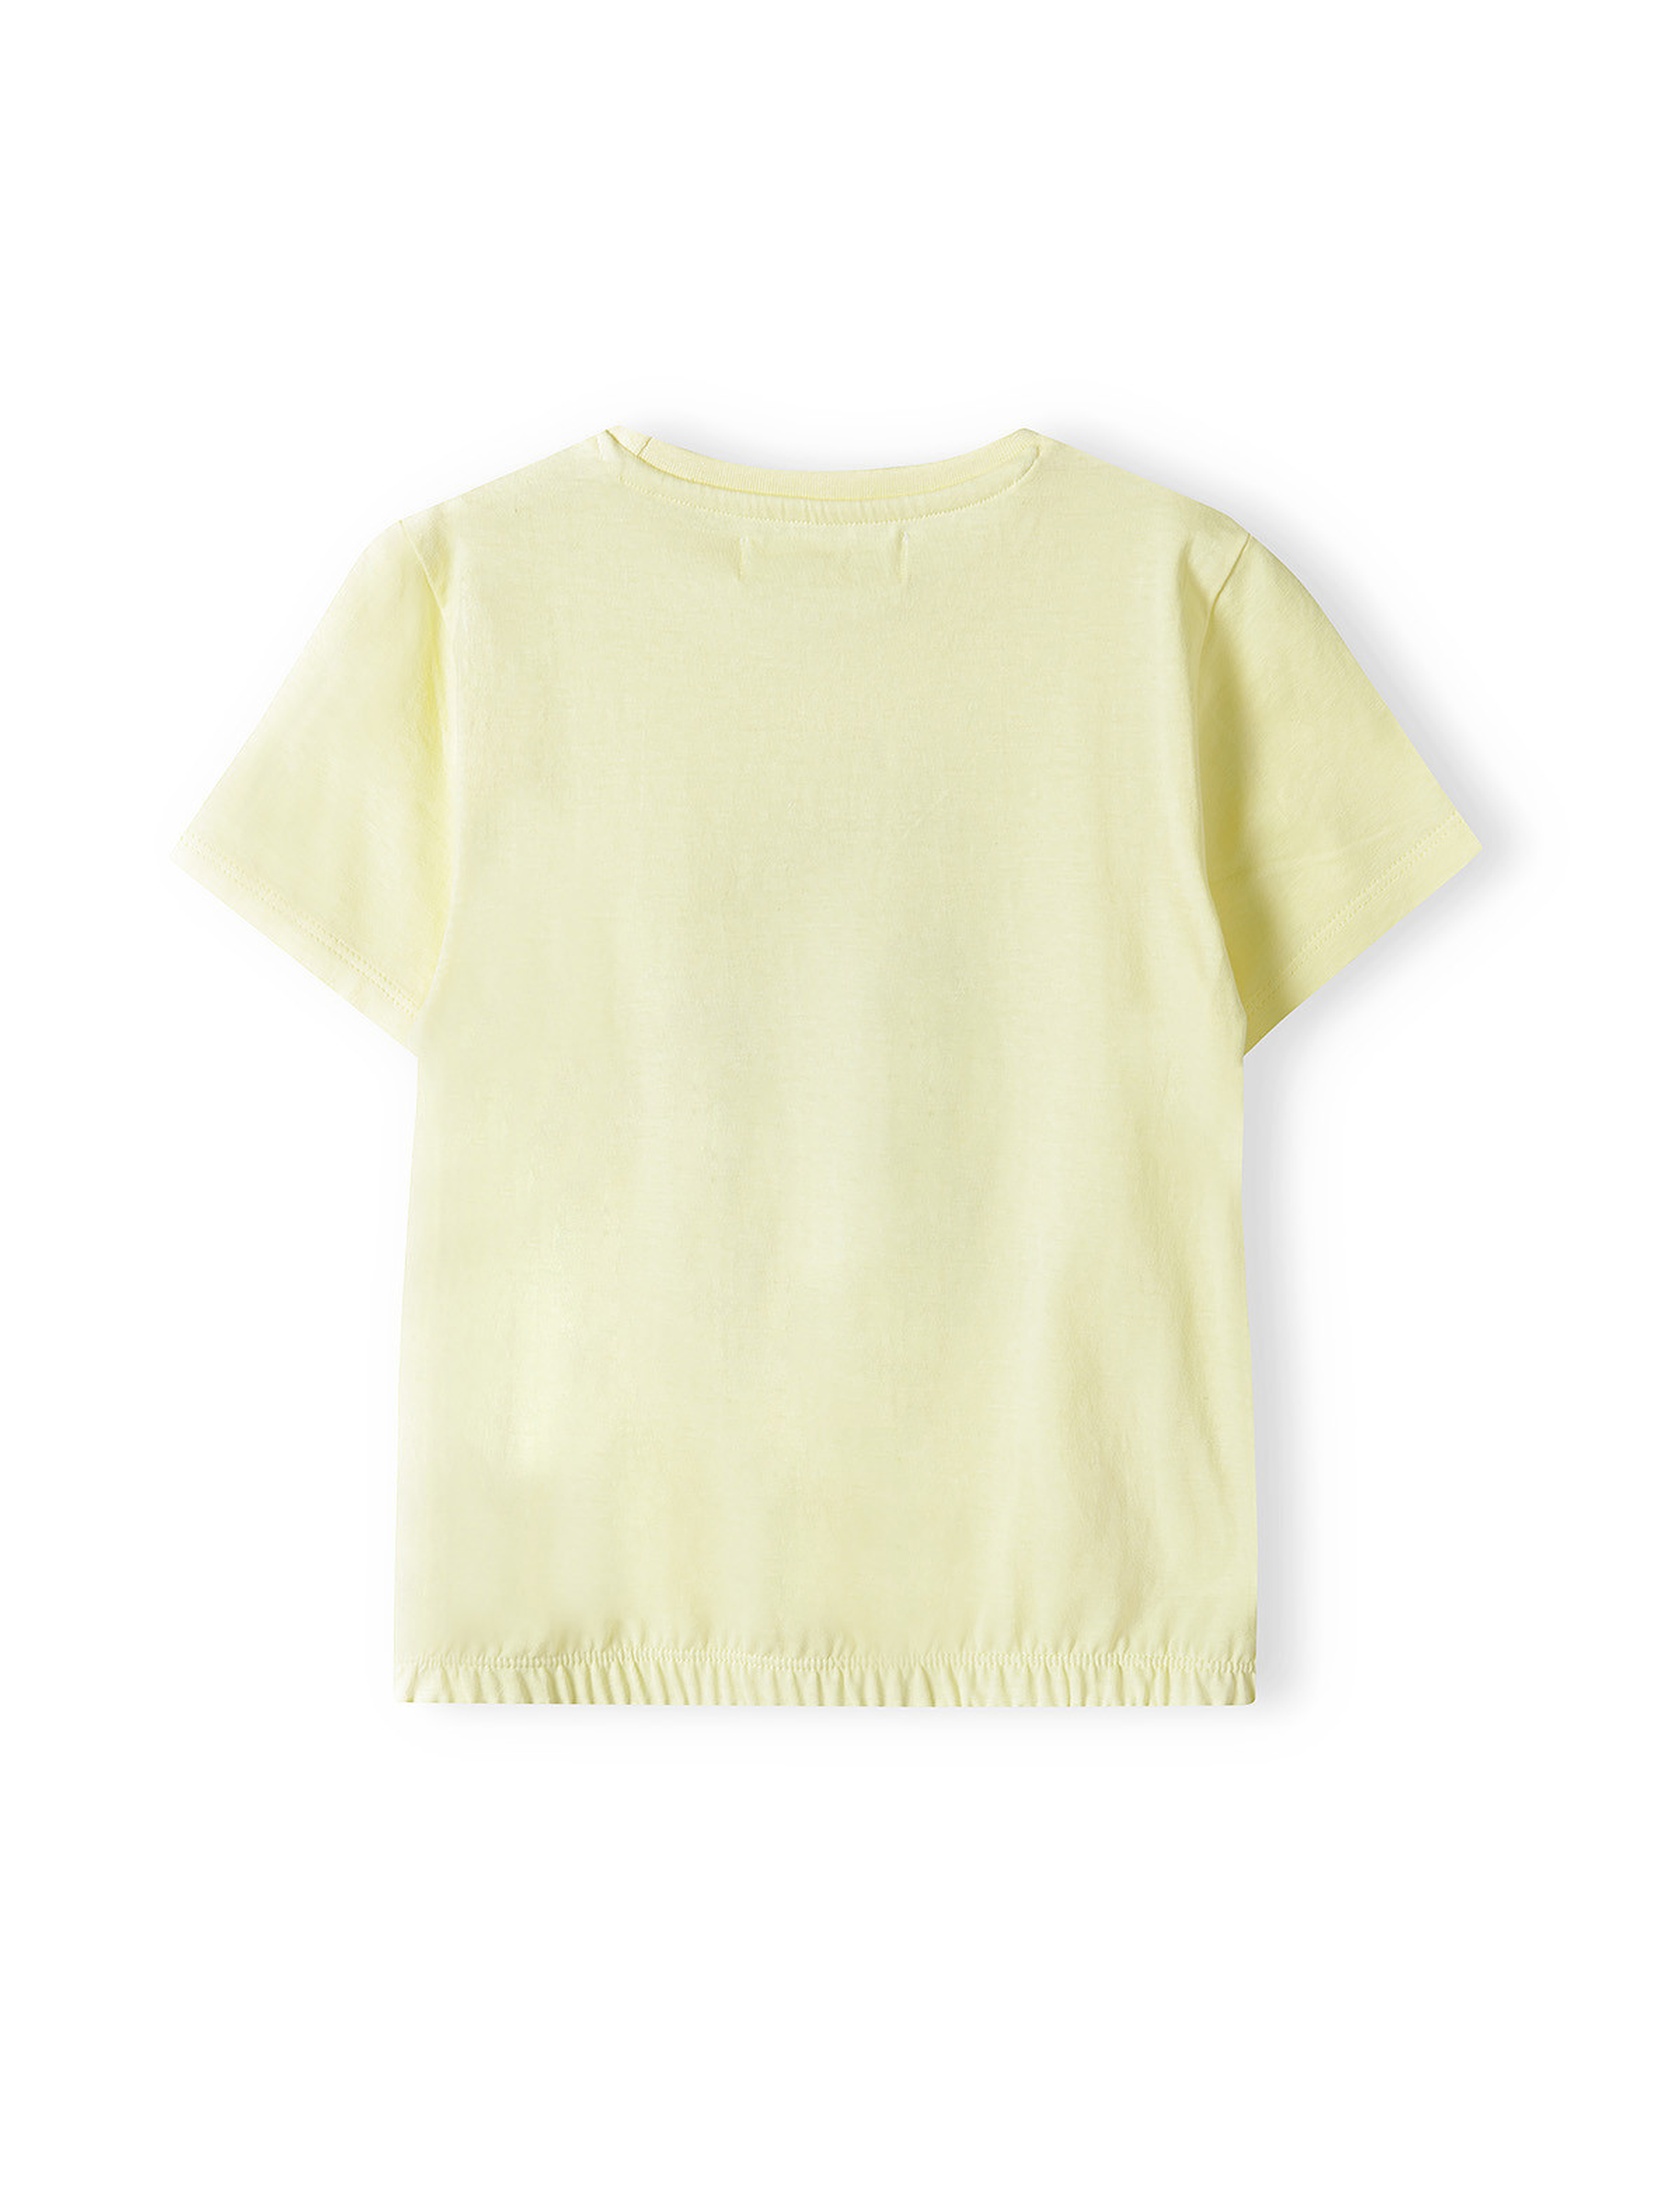 Zółta bluzka bawełniana dla dziewczynki- lemoniada